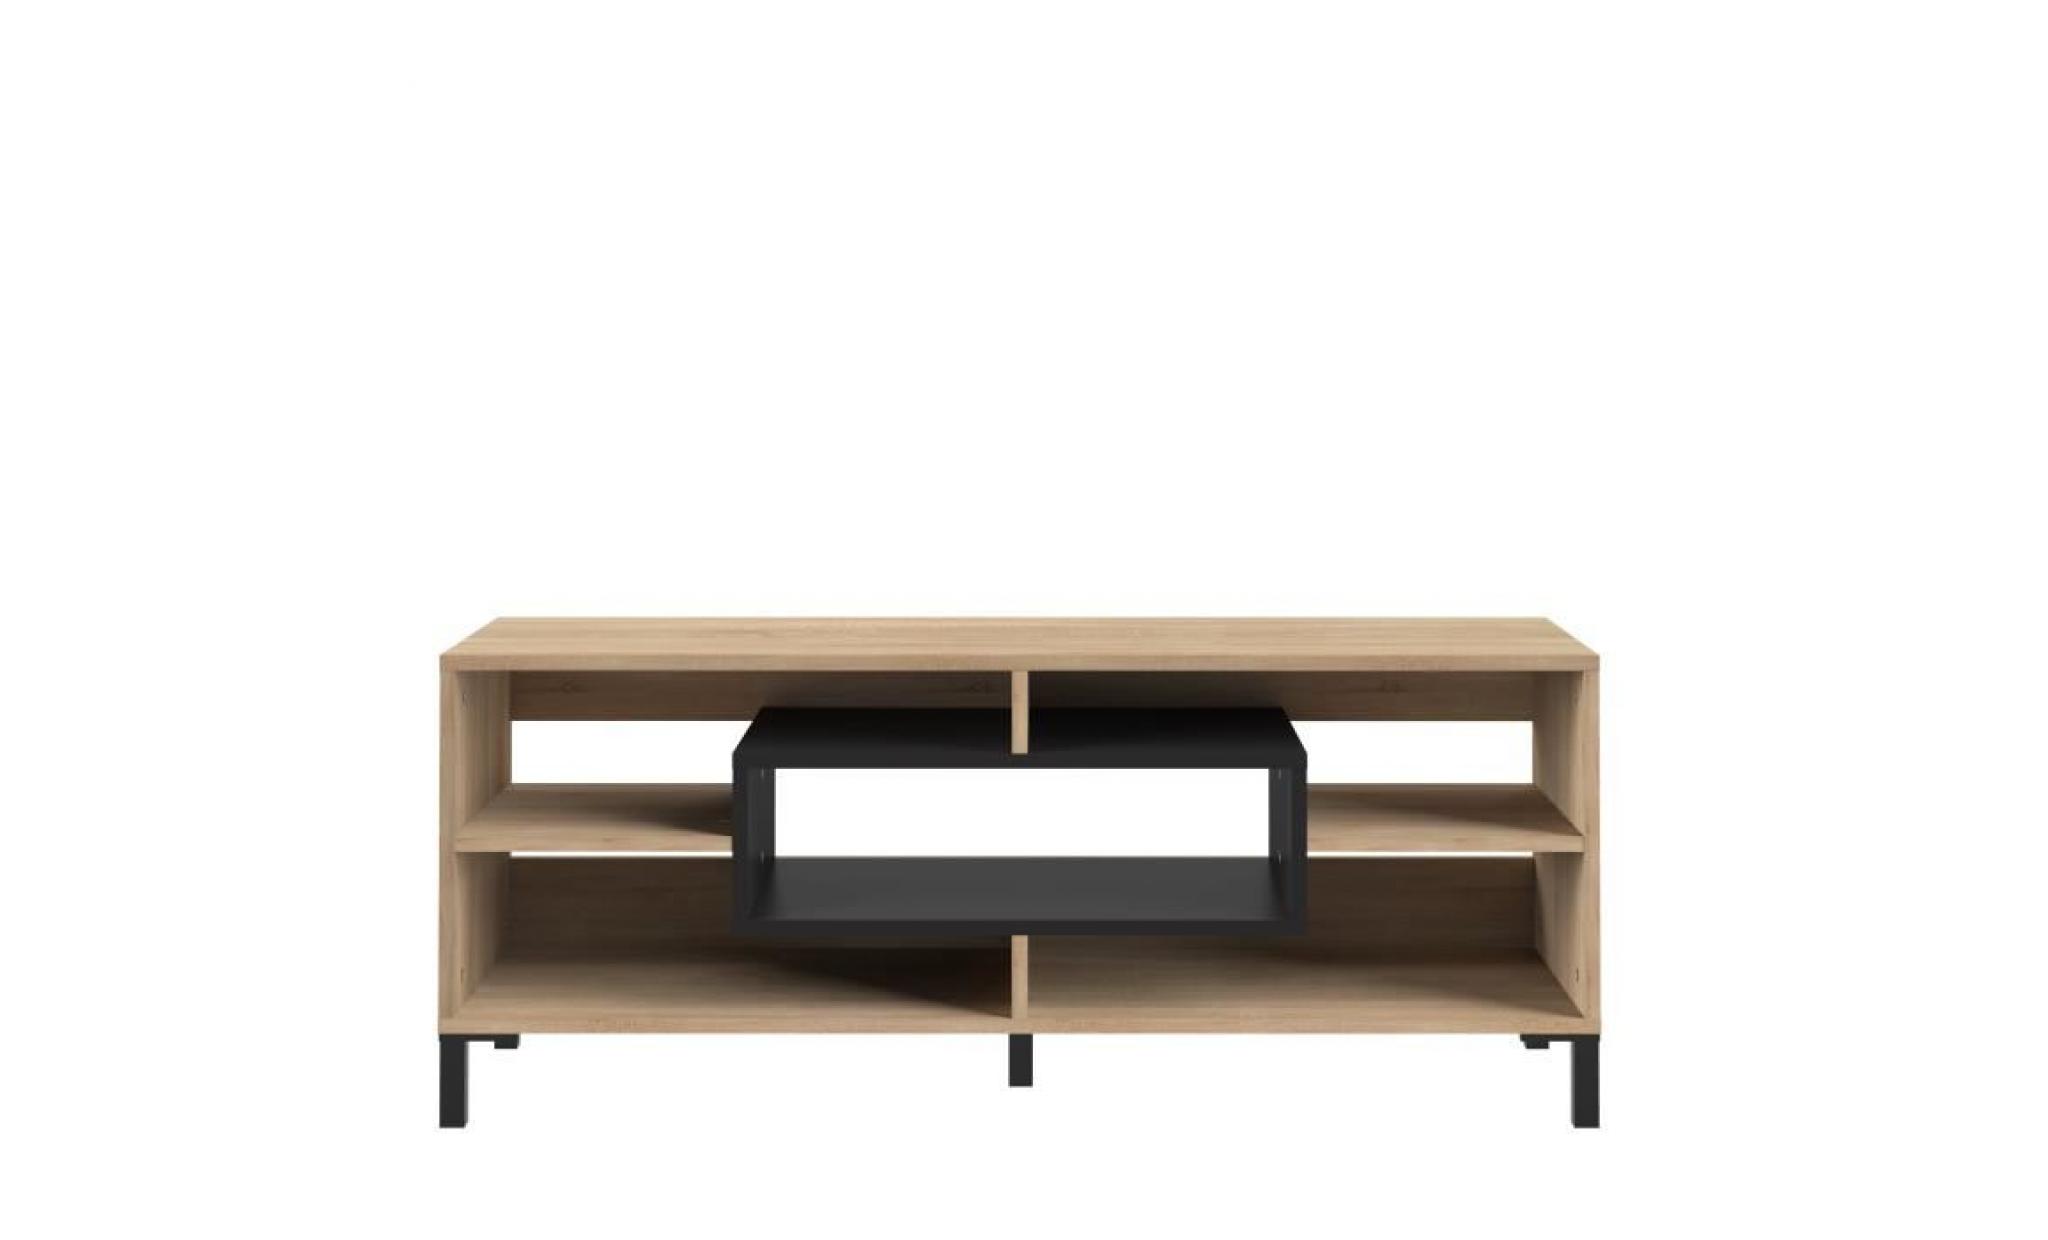 finlandek meuble tv odaiba   contemporain   décor chêne clair et noir   l 119,5 cm pas cher